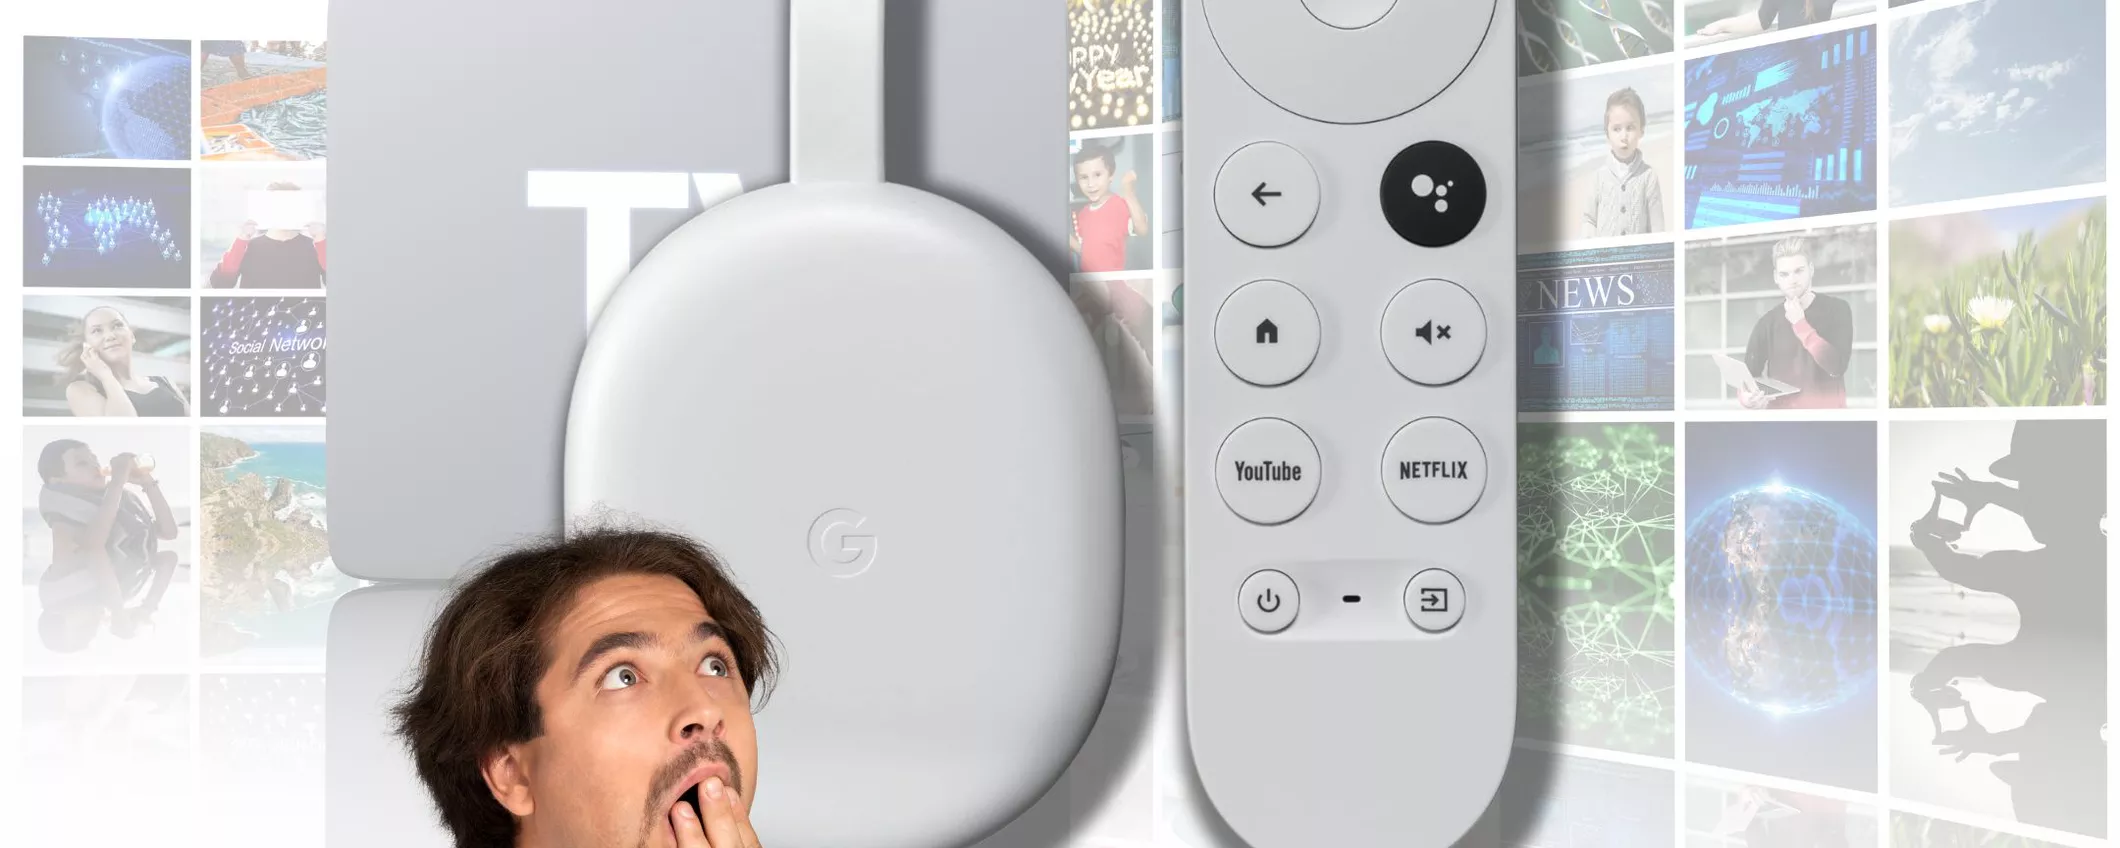 Incredibile Offerta Amazon: Chromecast con Google TV a soli 29,99€ con uno Sconto del 6%!